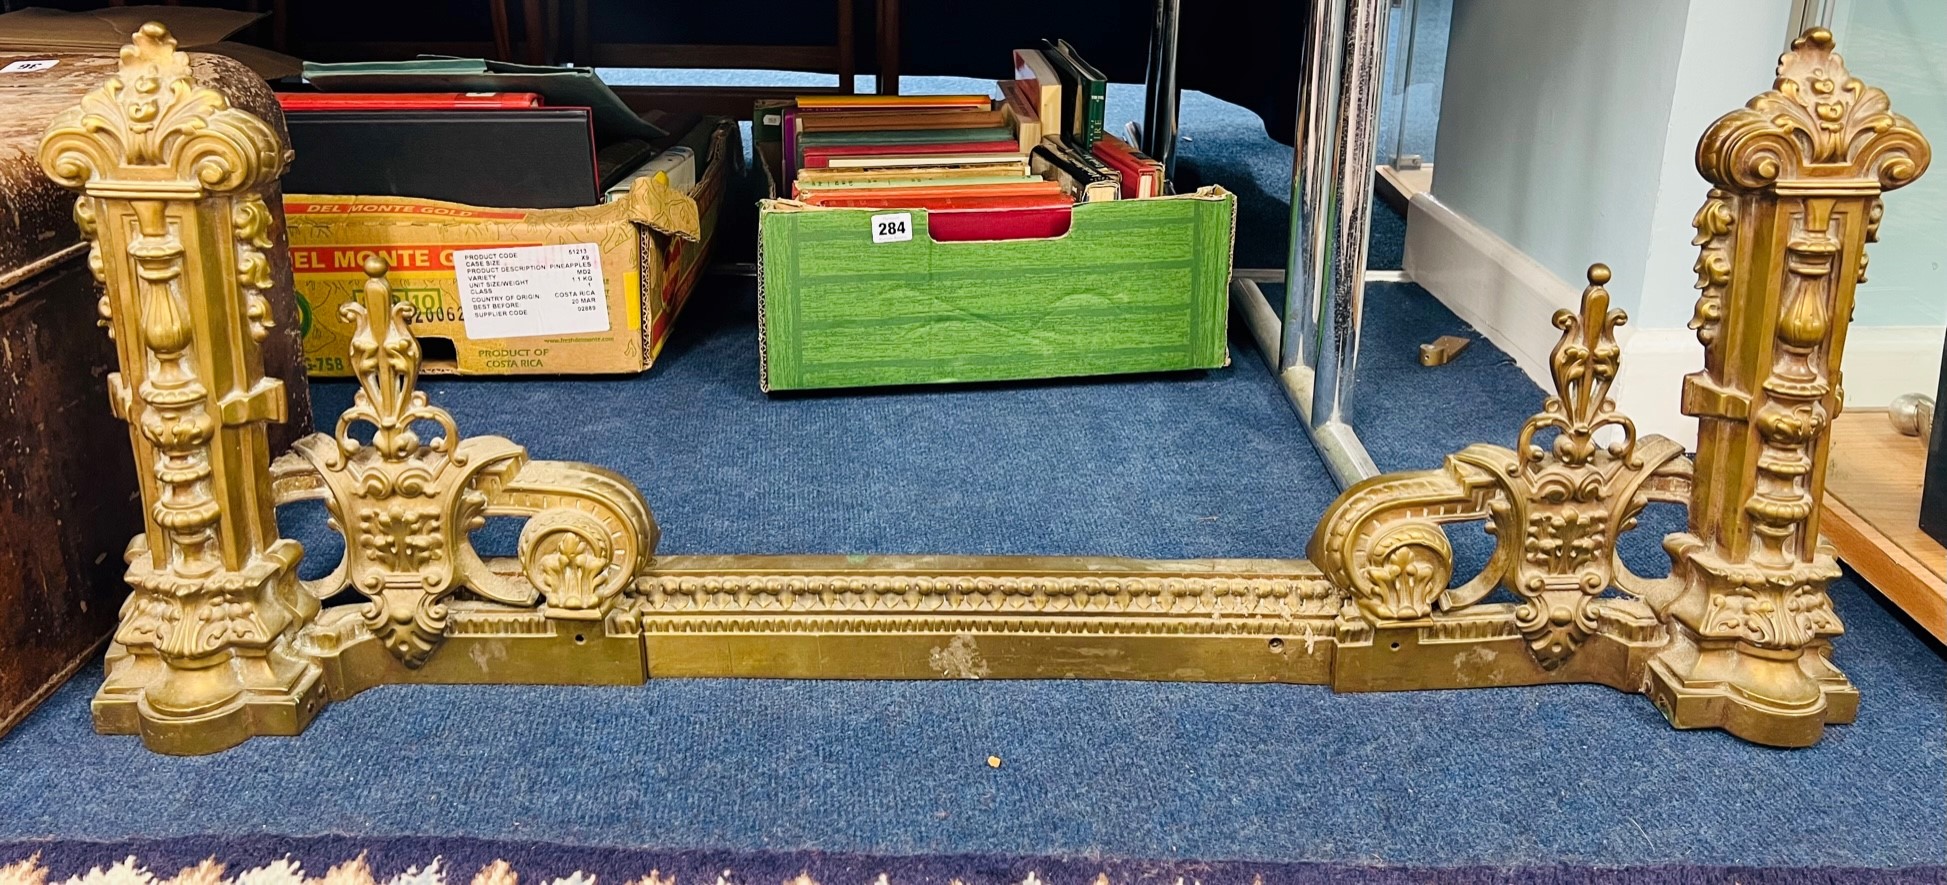 An antique brass extending ornate fender.